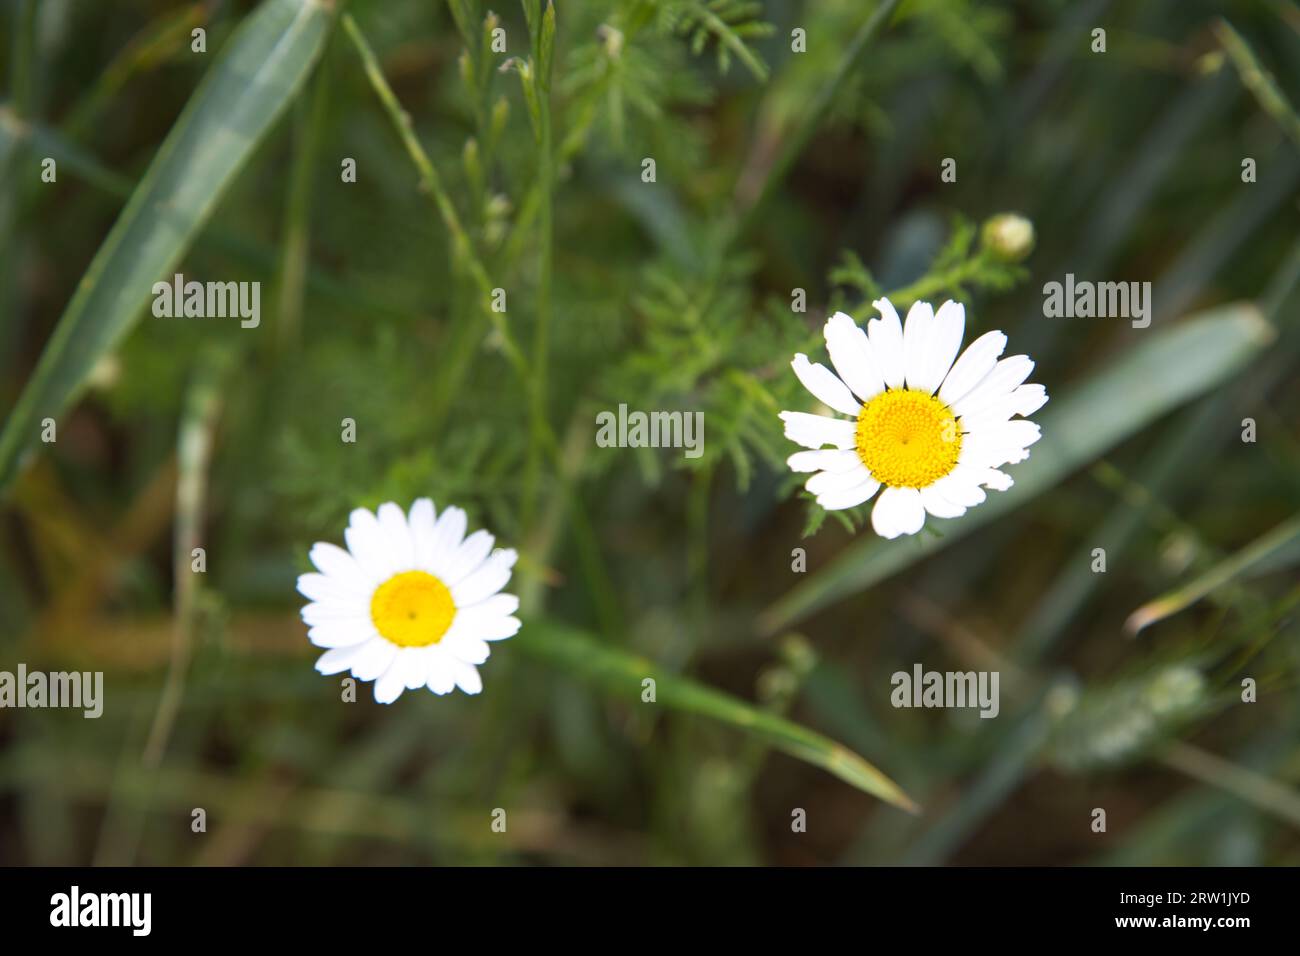 A daisy flower in a crop field Stock Photo